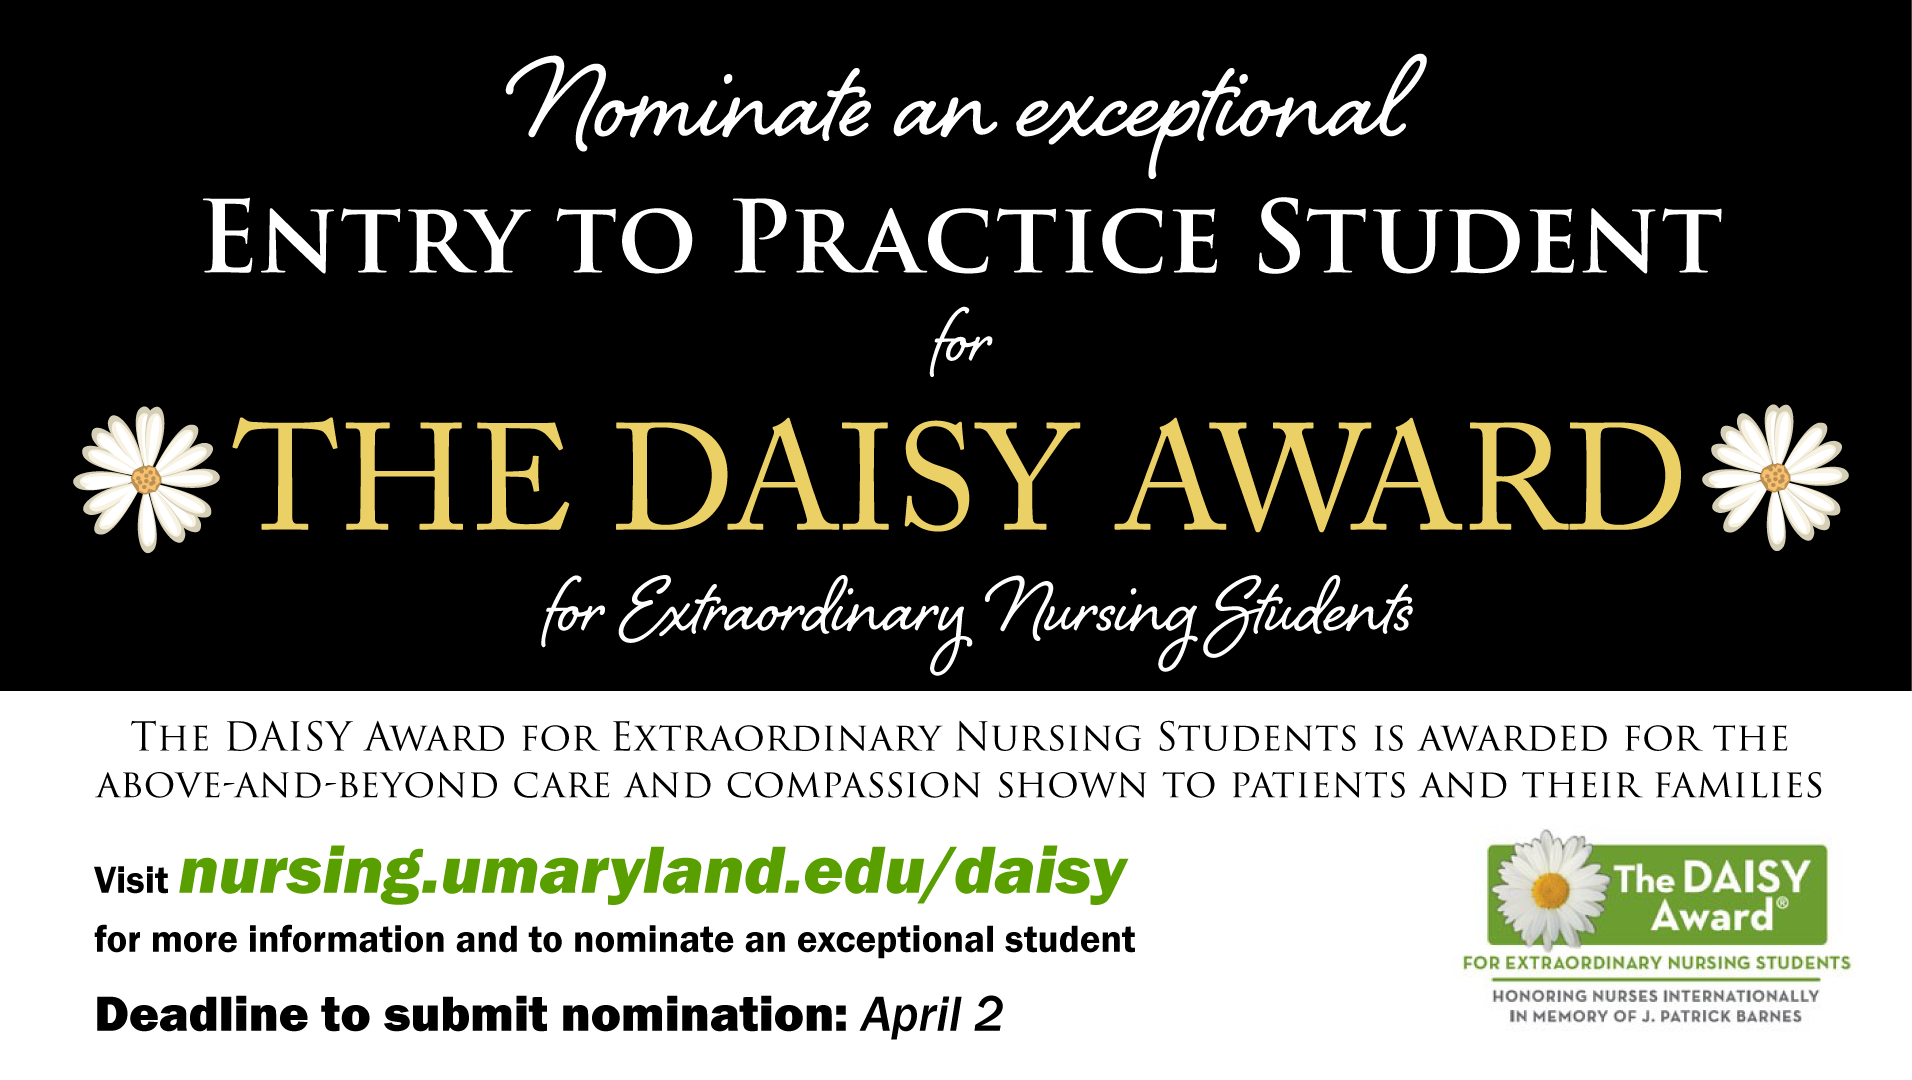 https://www.nursing.umaryland.edu/award-nominations/daisy-award/#nominate